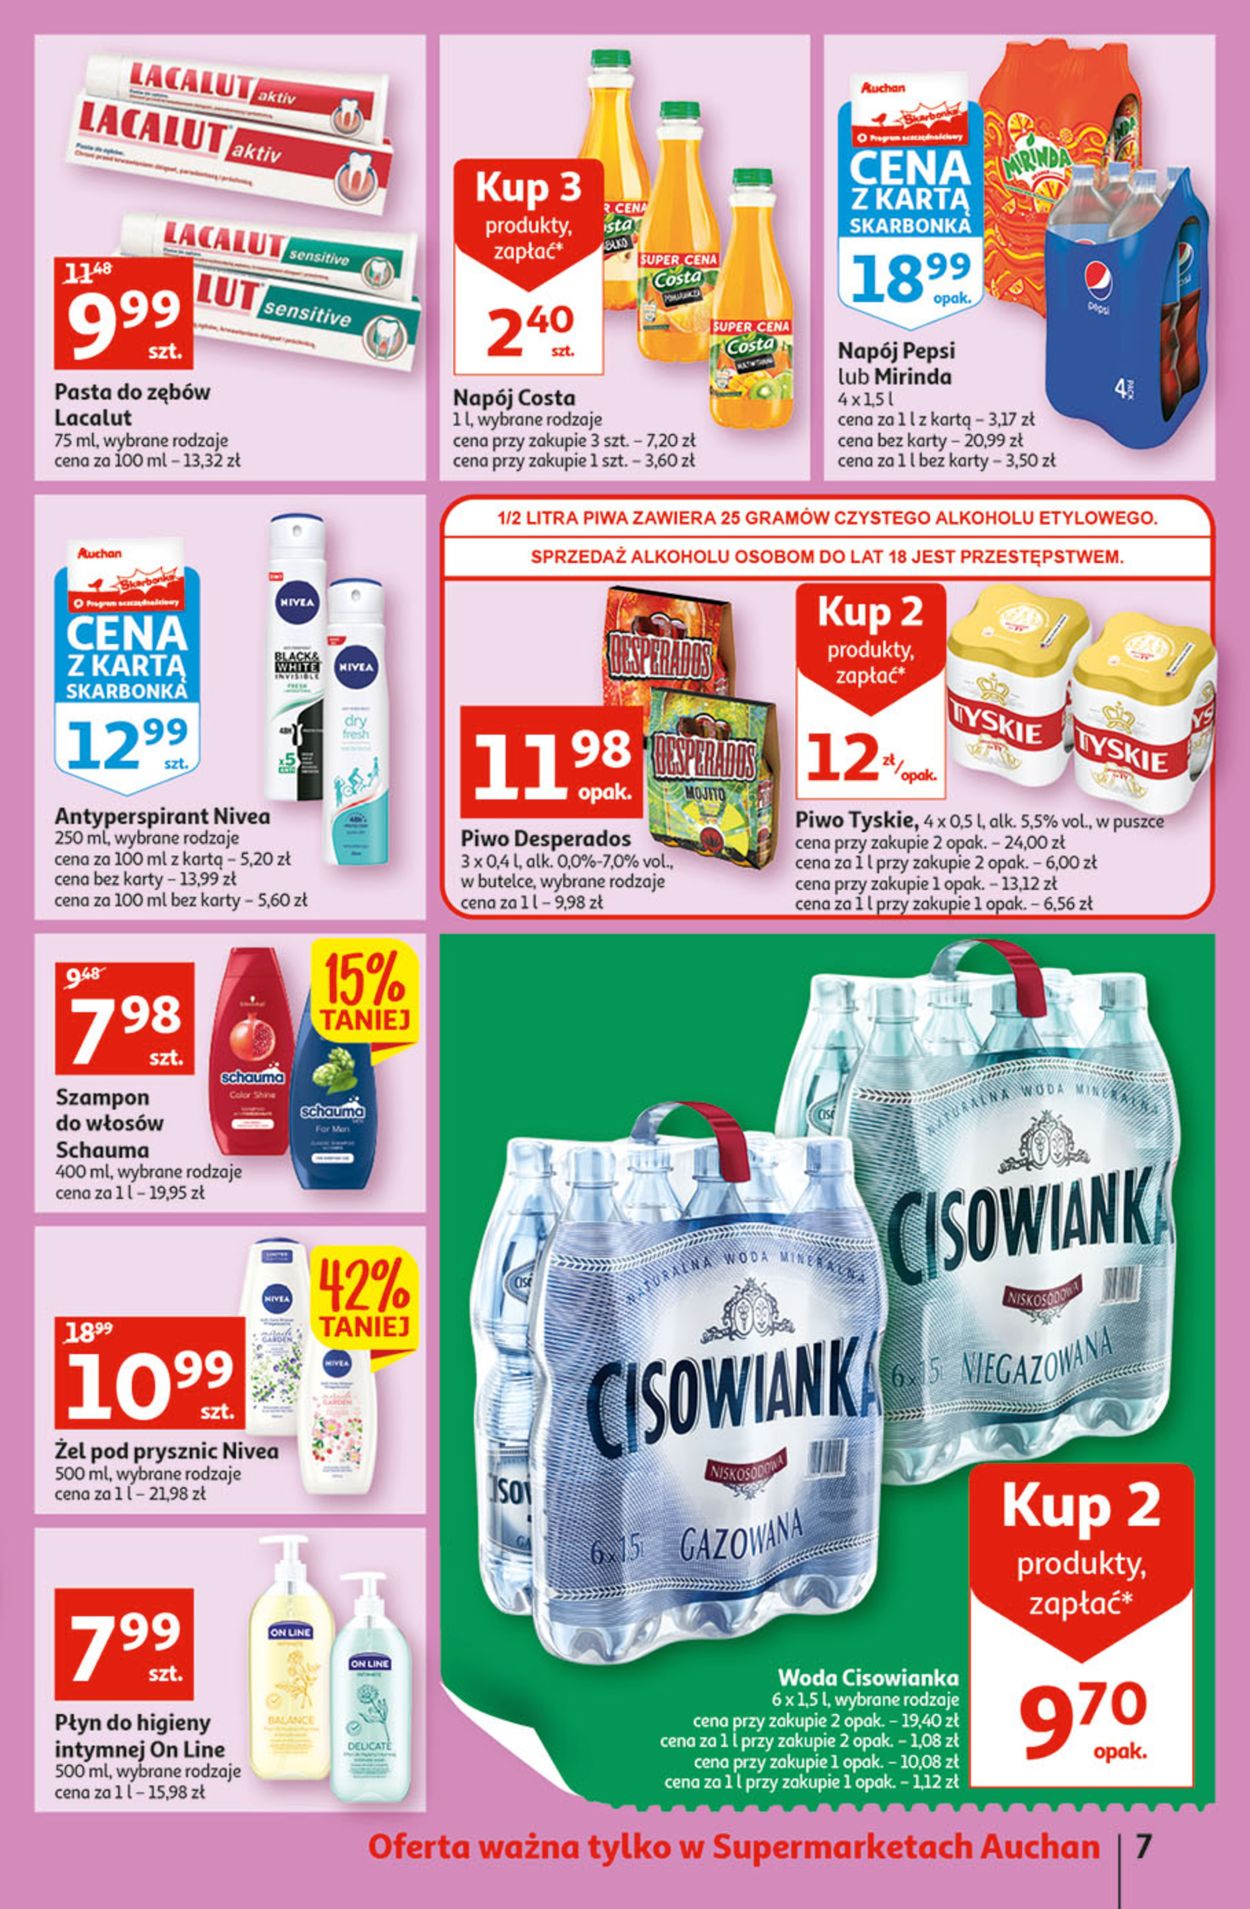 Auchan Gazetka od 23.06.2022